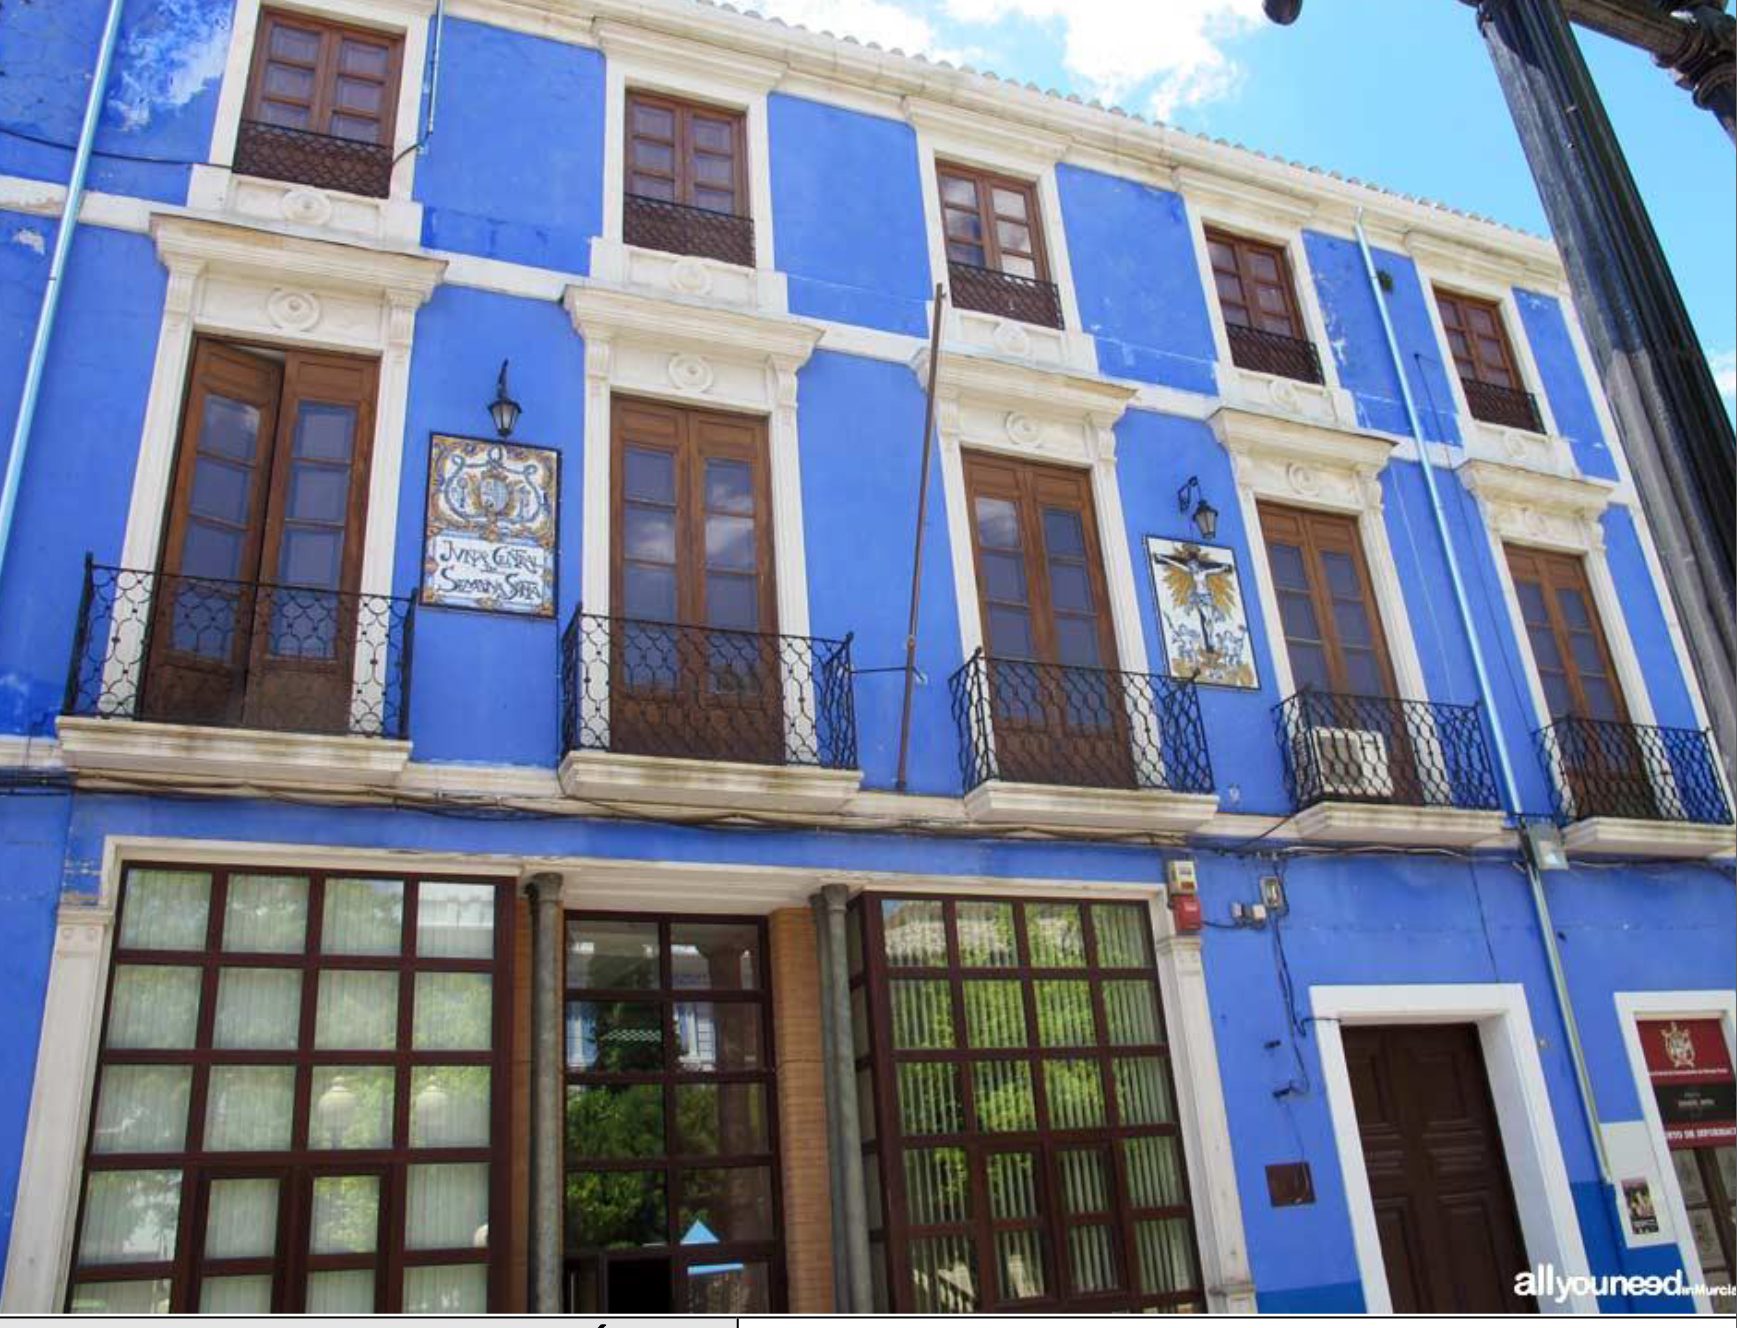 El Ayuntamiento invertirá cerca de 25.000 euros en sustituir la cubierta del edificio azul